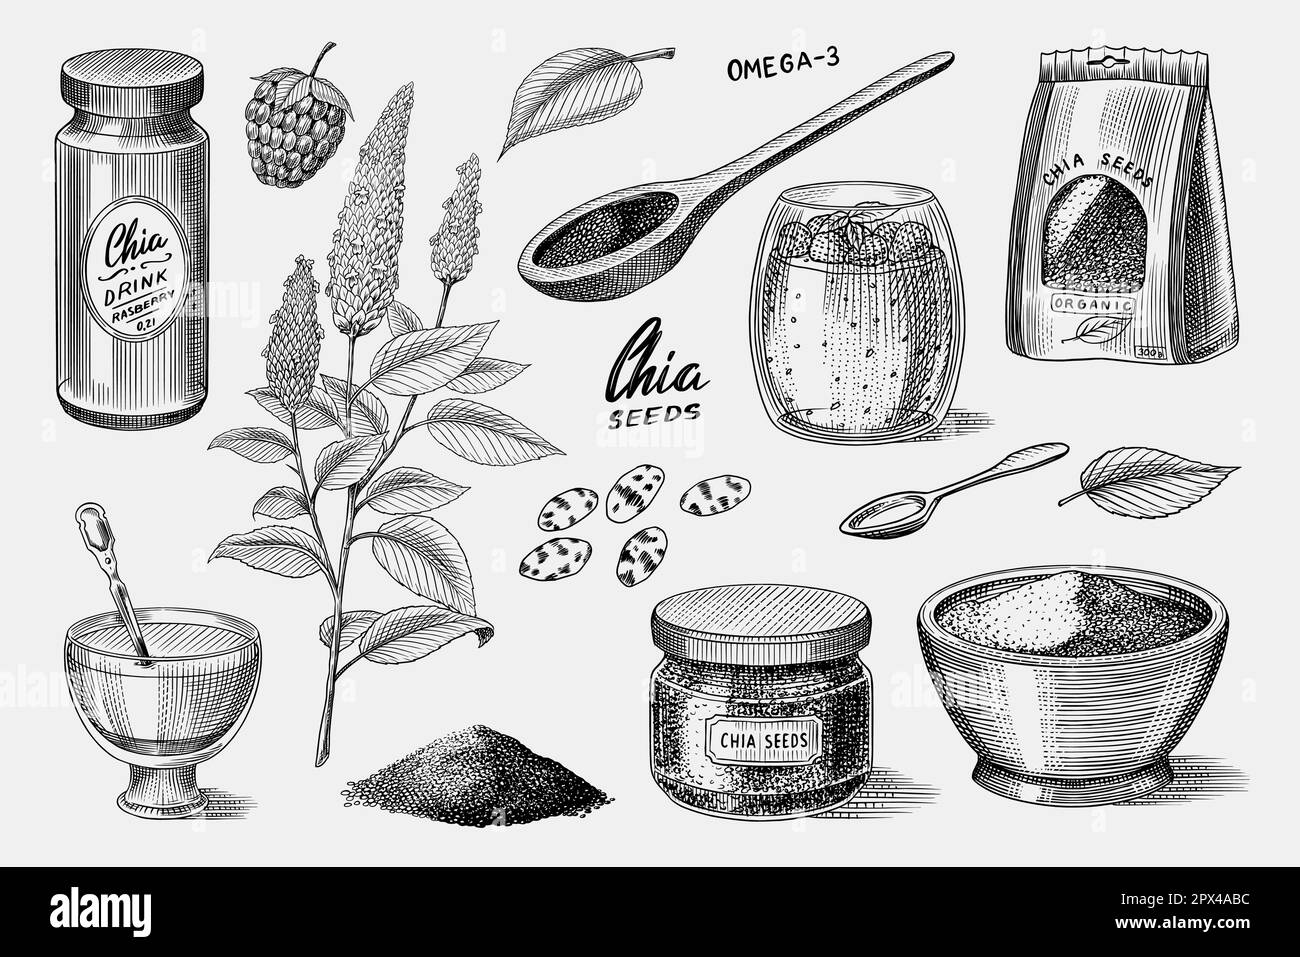 Chia plante et graines.Salvia hispanica.Emballage aux épices, cuillère en bois, dessert et pudding.Une poignée d'assaisonnement et une bouteille en verre.Gravé Illustration de Vecteur